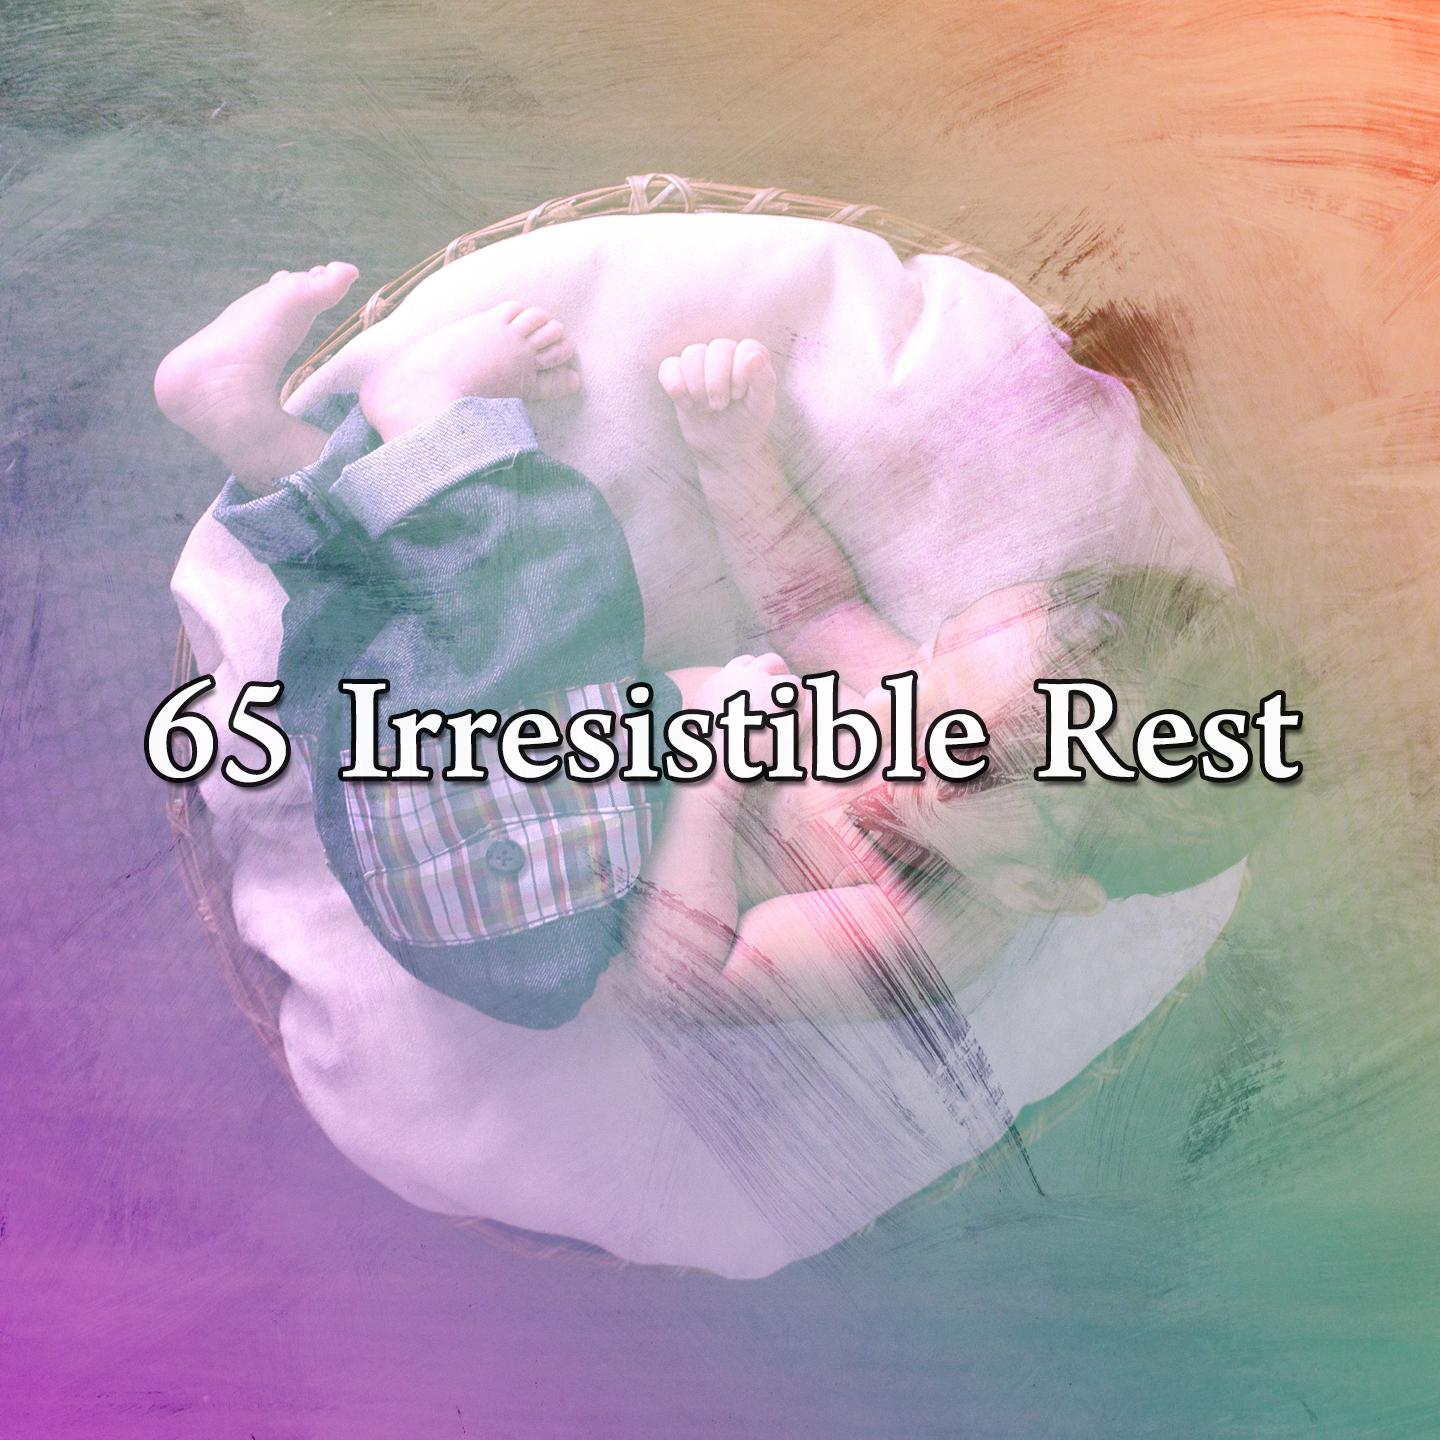 65 Irresistible Rest